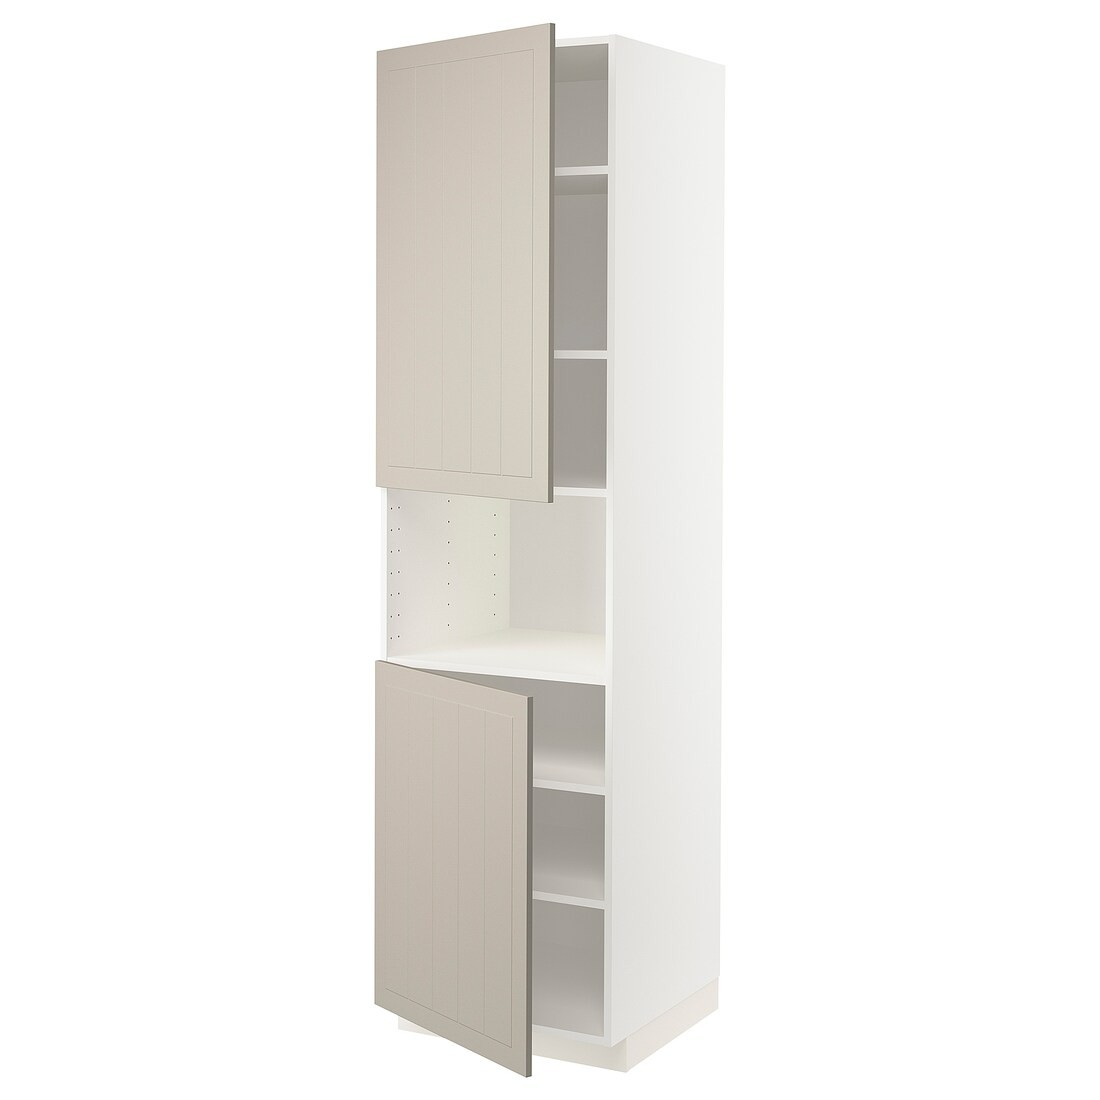 IKEA METOD МЕТОД Высокий шкаф для СВЧ / 2 дверцы / полки, белый / Stensund бежевый, 60x60x220 см 79456011 | 794.560.11